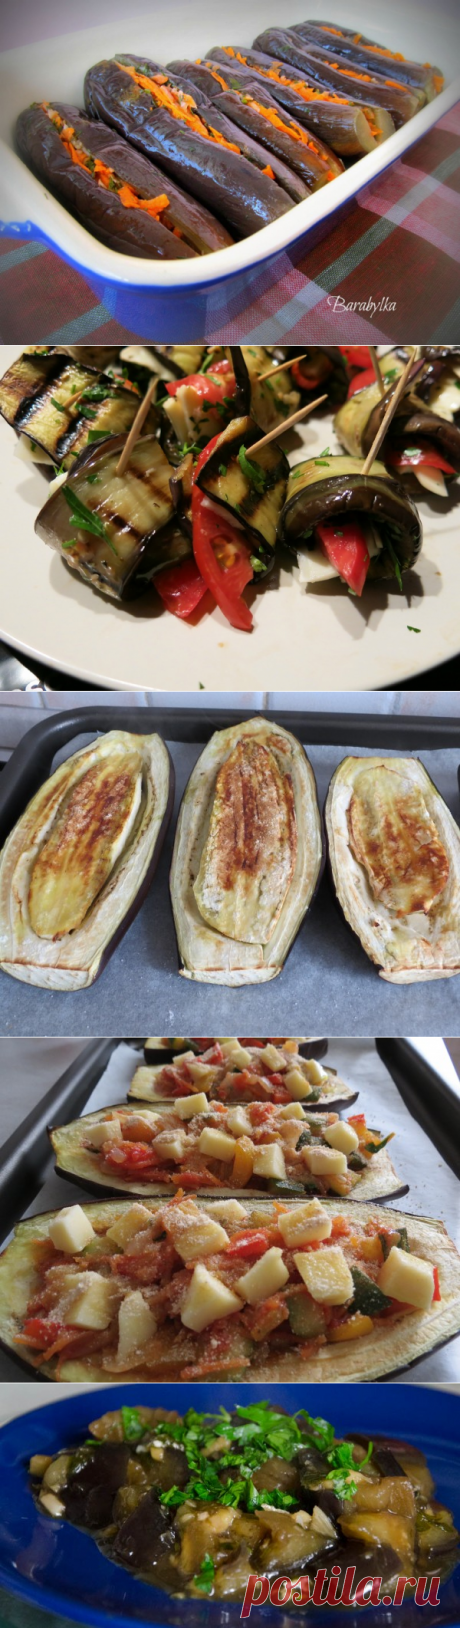 Foodclub — кулинарные рецепты с пошаговыми фотографиями